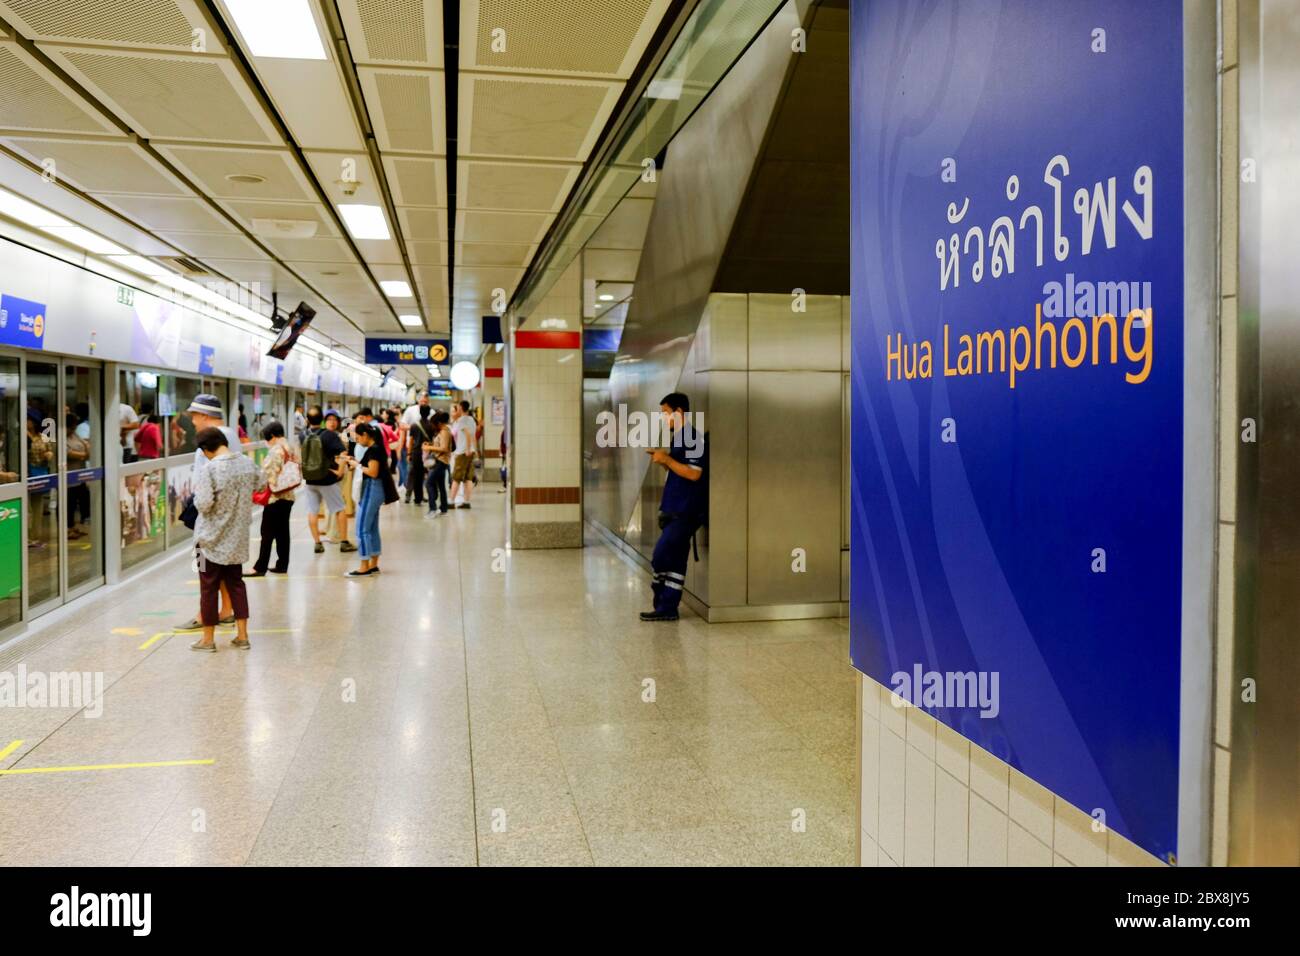 Hua Lamphong metro station in Bangkok,Thailand Stock Photo